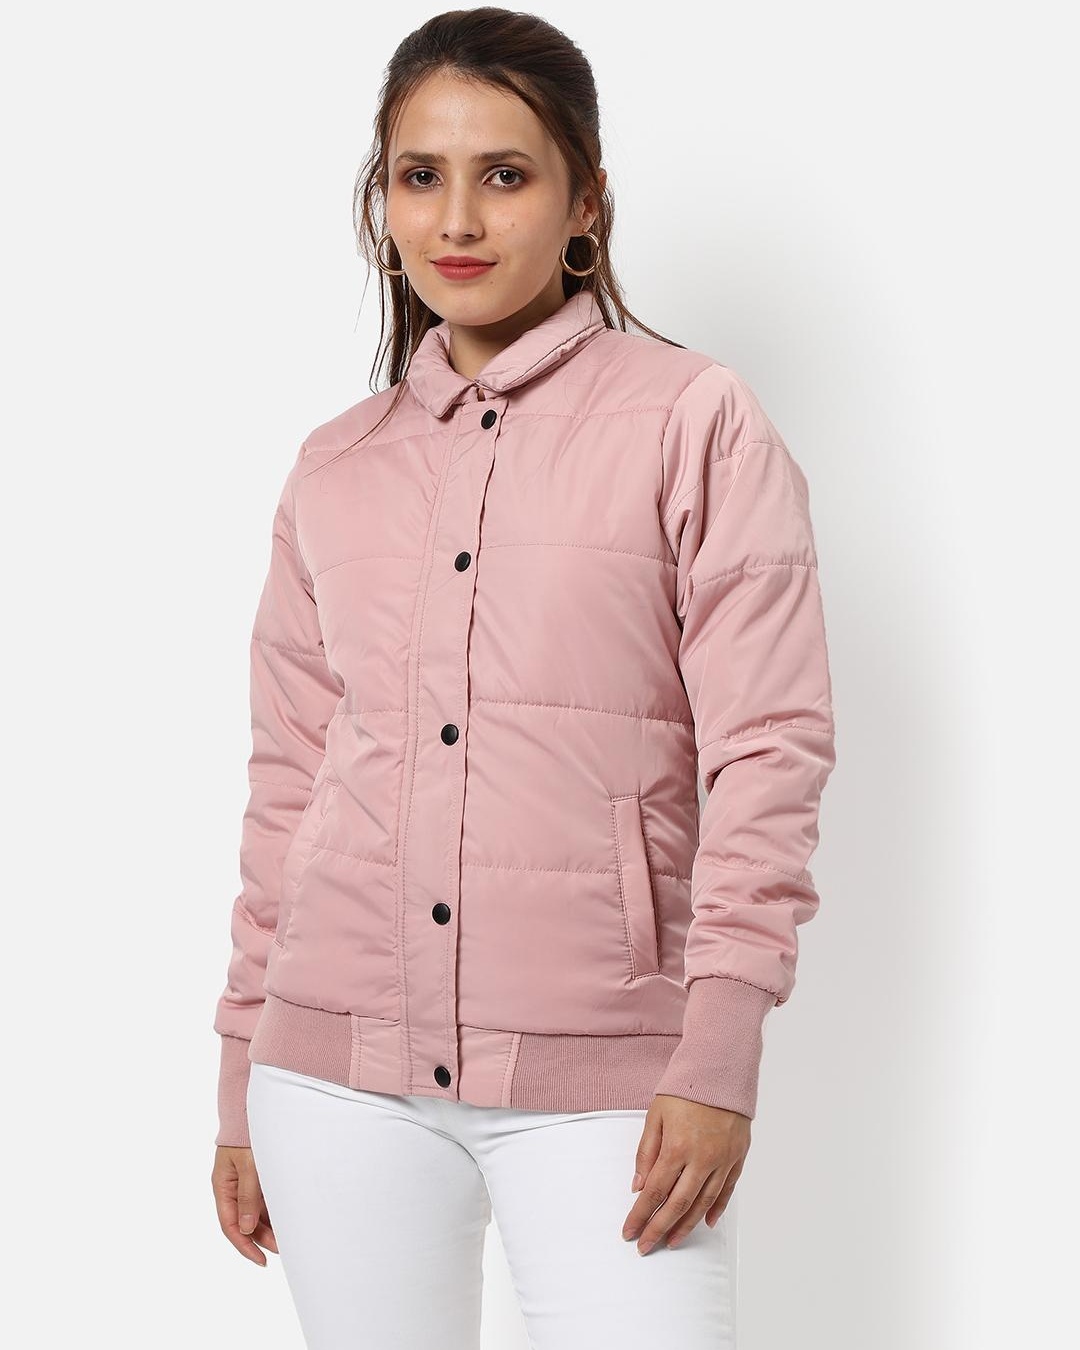 Buy Women's Pink Jacket Online at Bewakoof